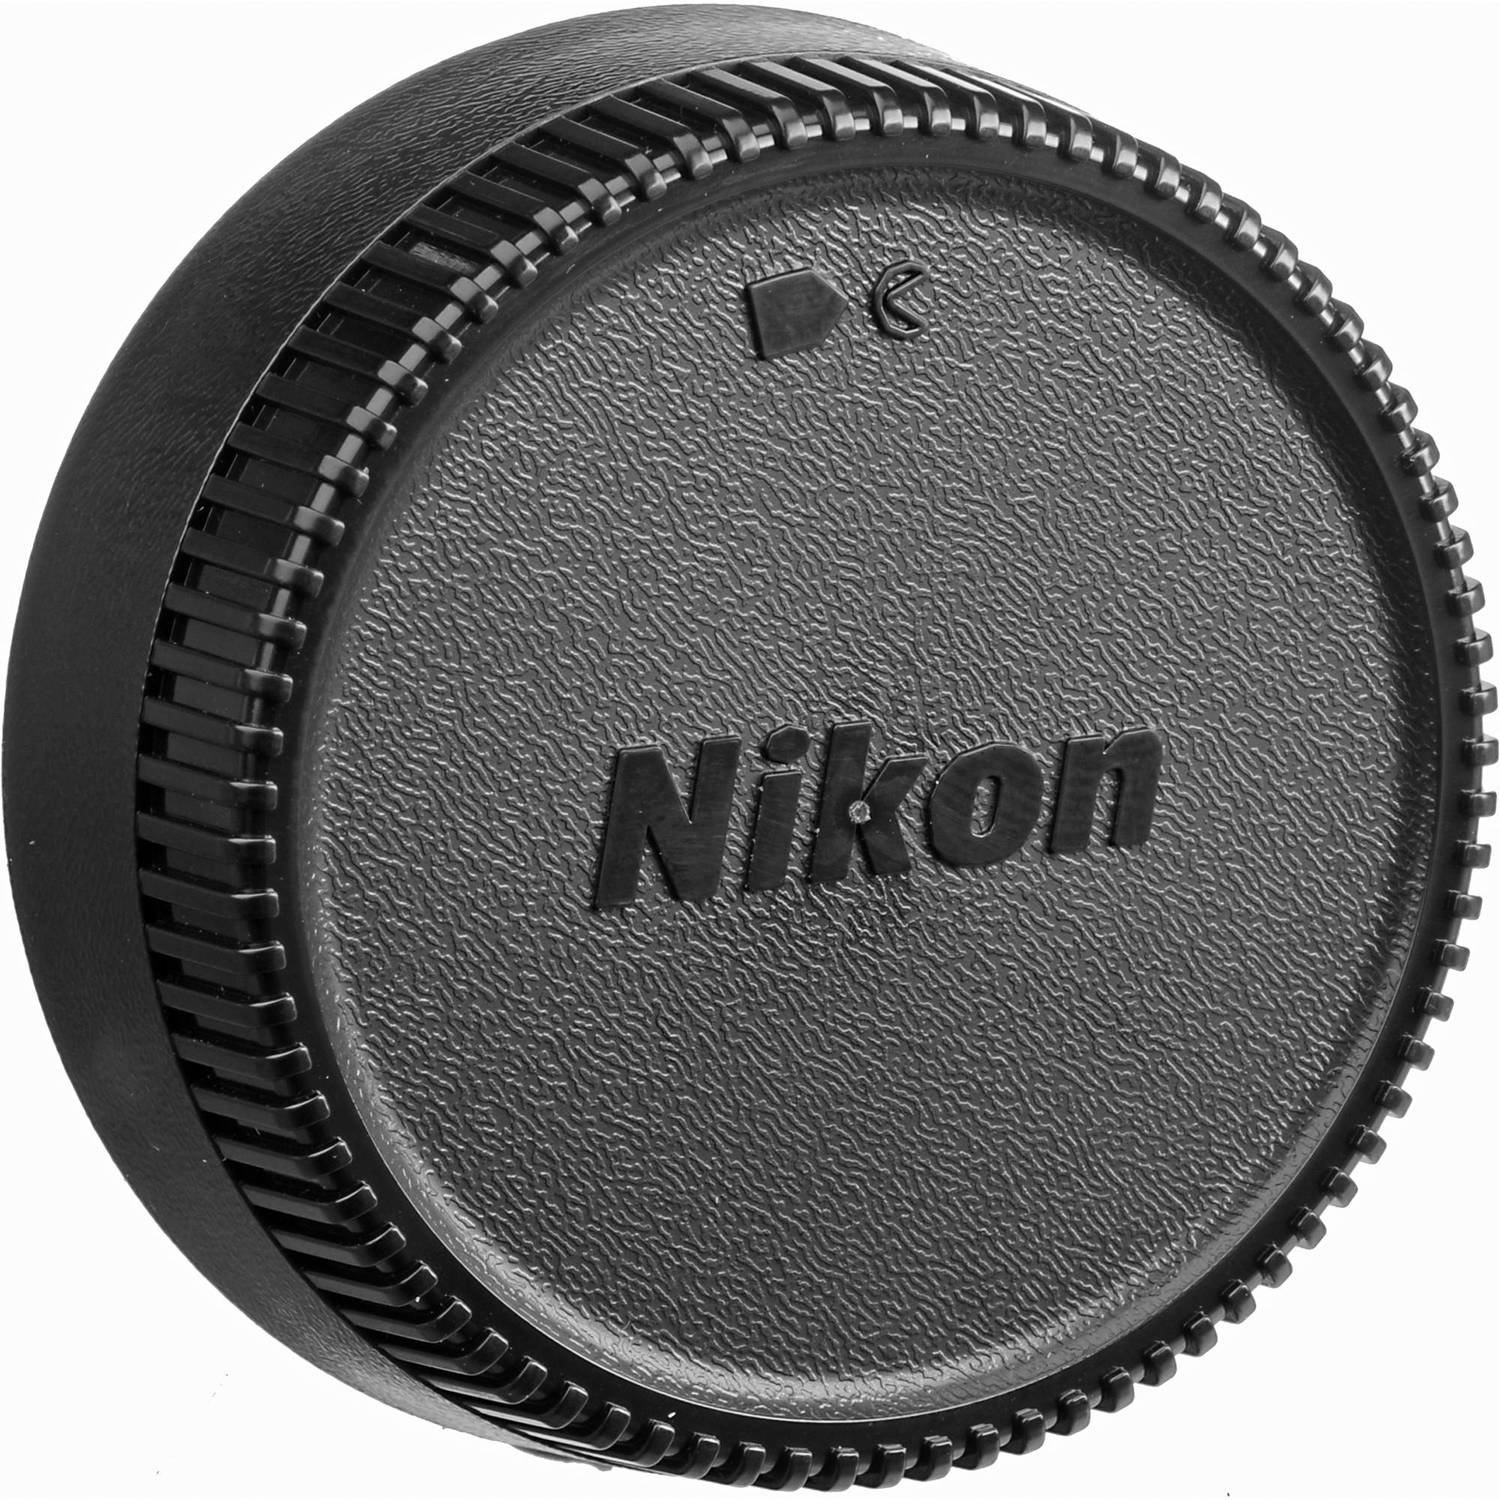 Nikon AF-S DX NIKKOR 35mm f/1.8G Lens with Auto Focus for Nikon DSLR Cameras, 2183, Black